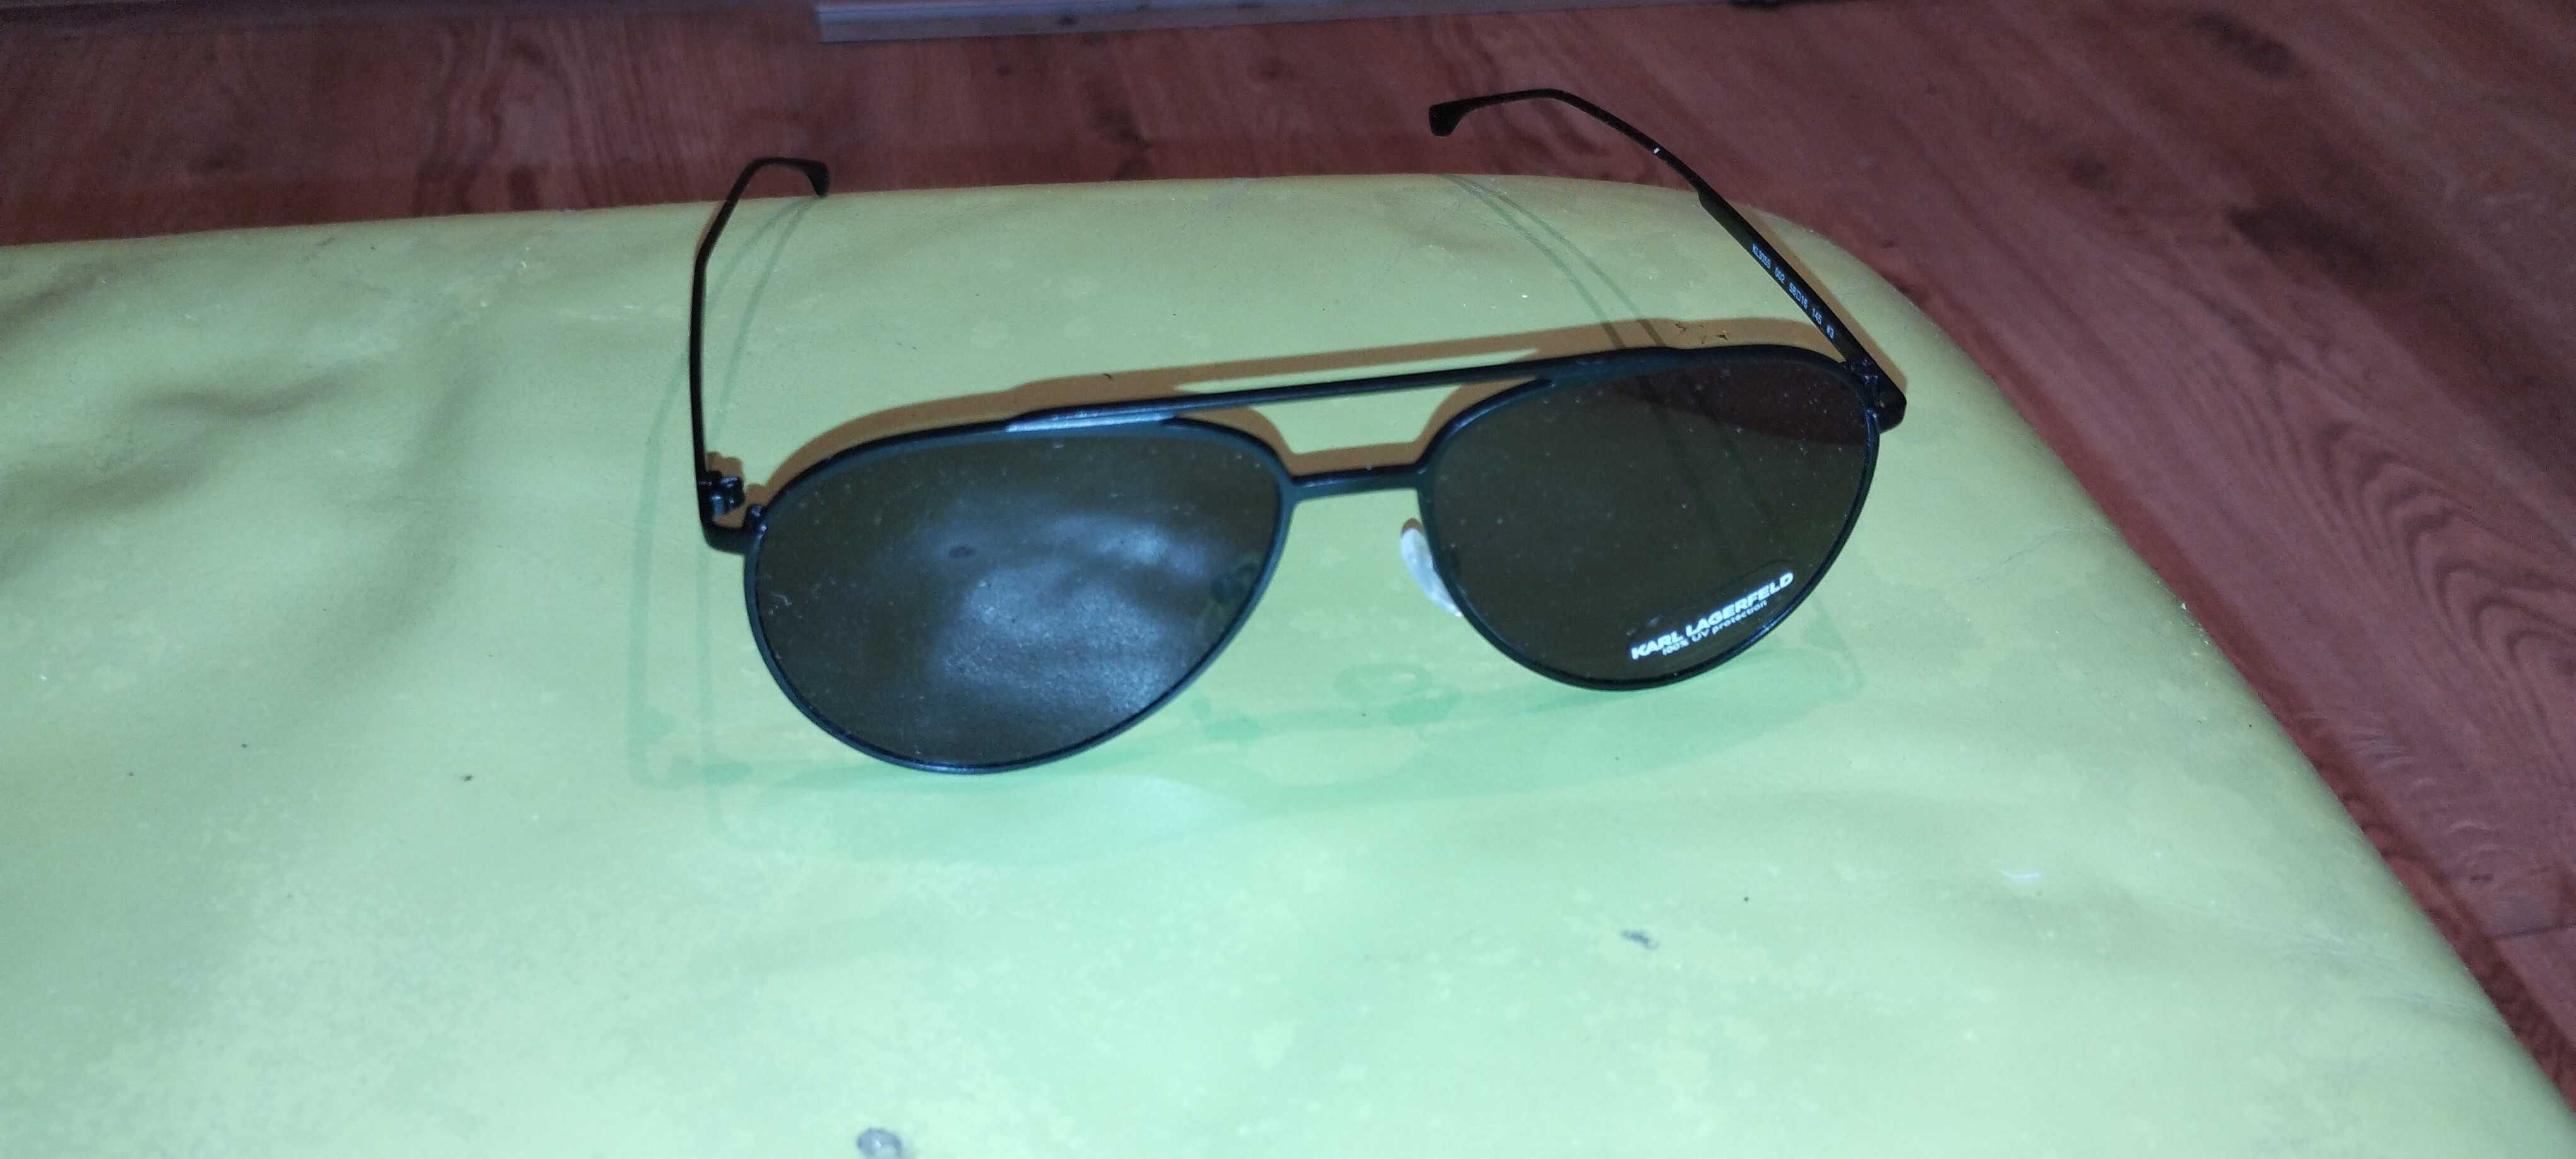 Okulary przeciwsłoneczne Karl Lagerfield nowe orginalne